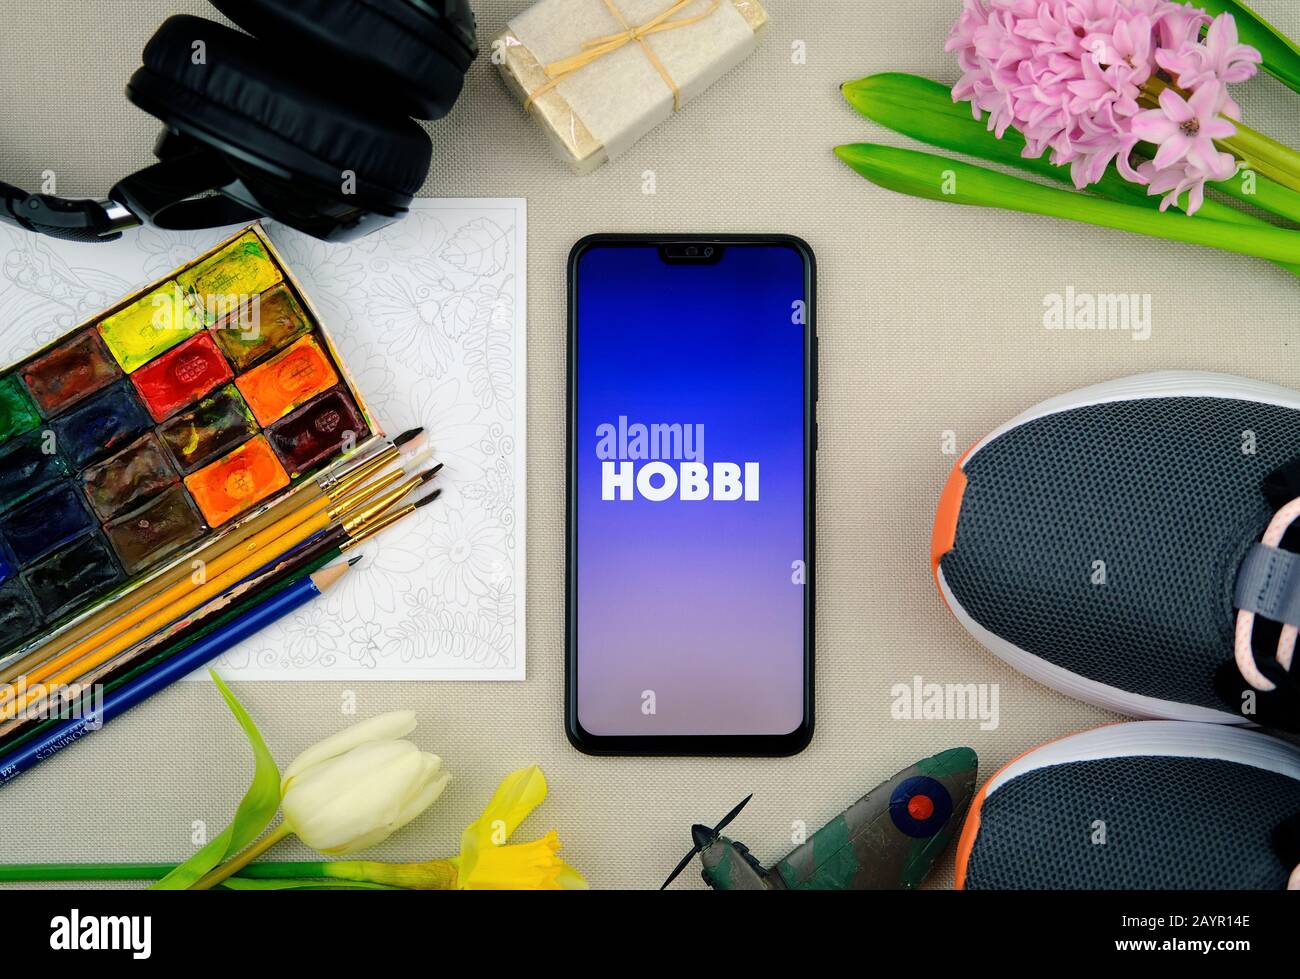 Logo de l'application HOBBI sur le smartphone et pièces représentant les hobbies populaires. Facebook a récemment publié l'application appelée Hobbi. Photo à plat. Banque D'Images